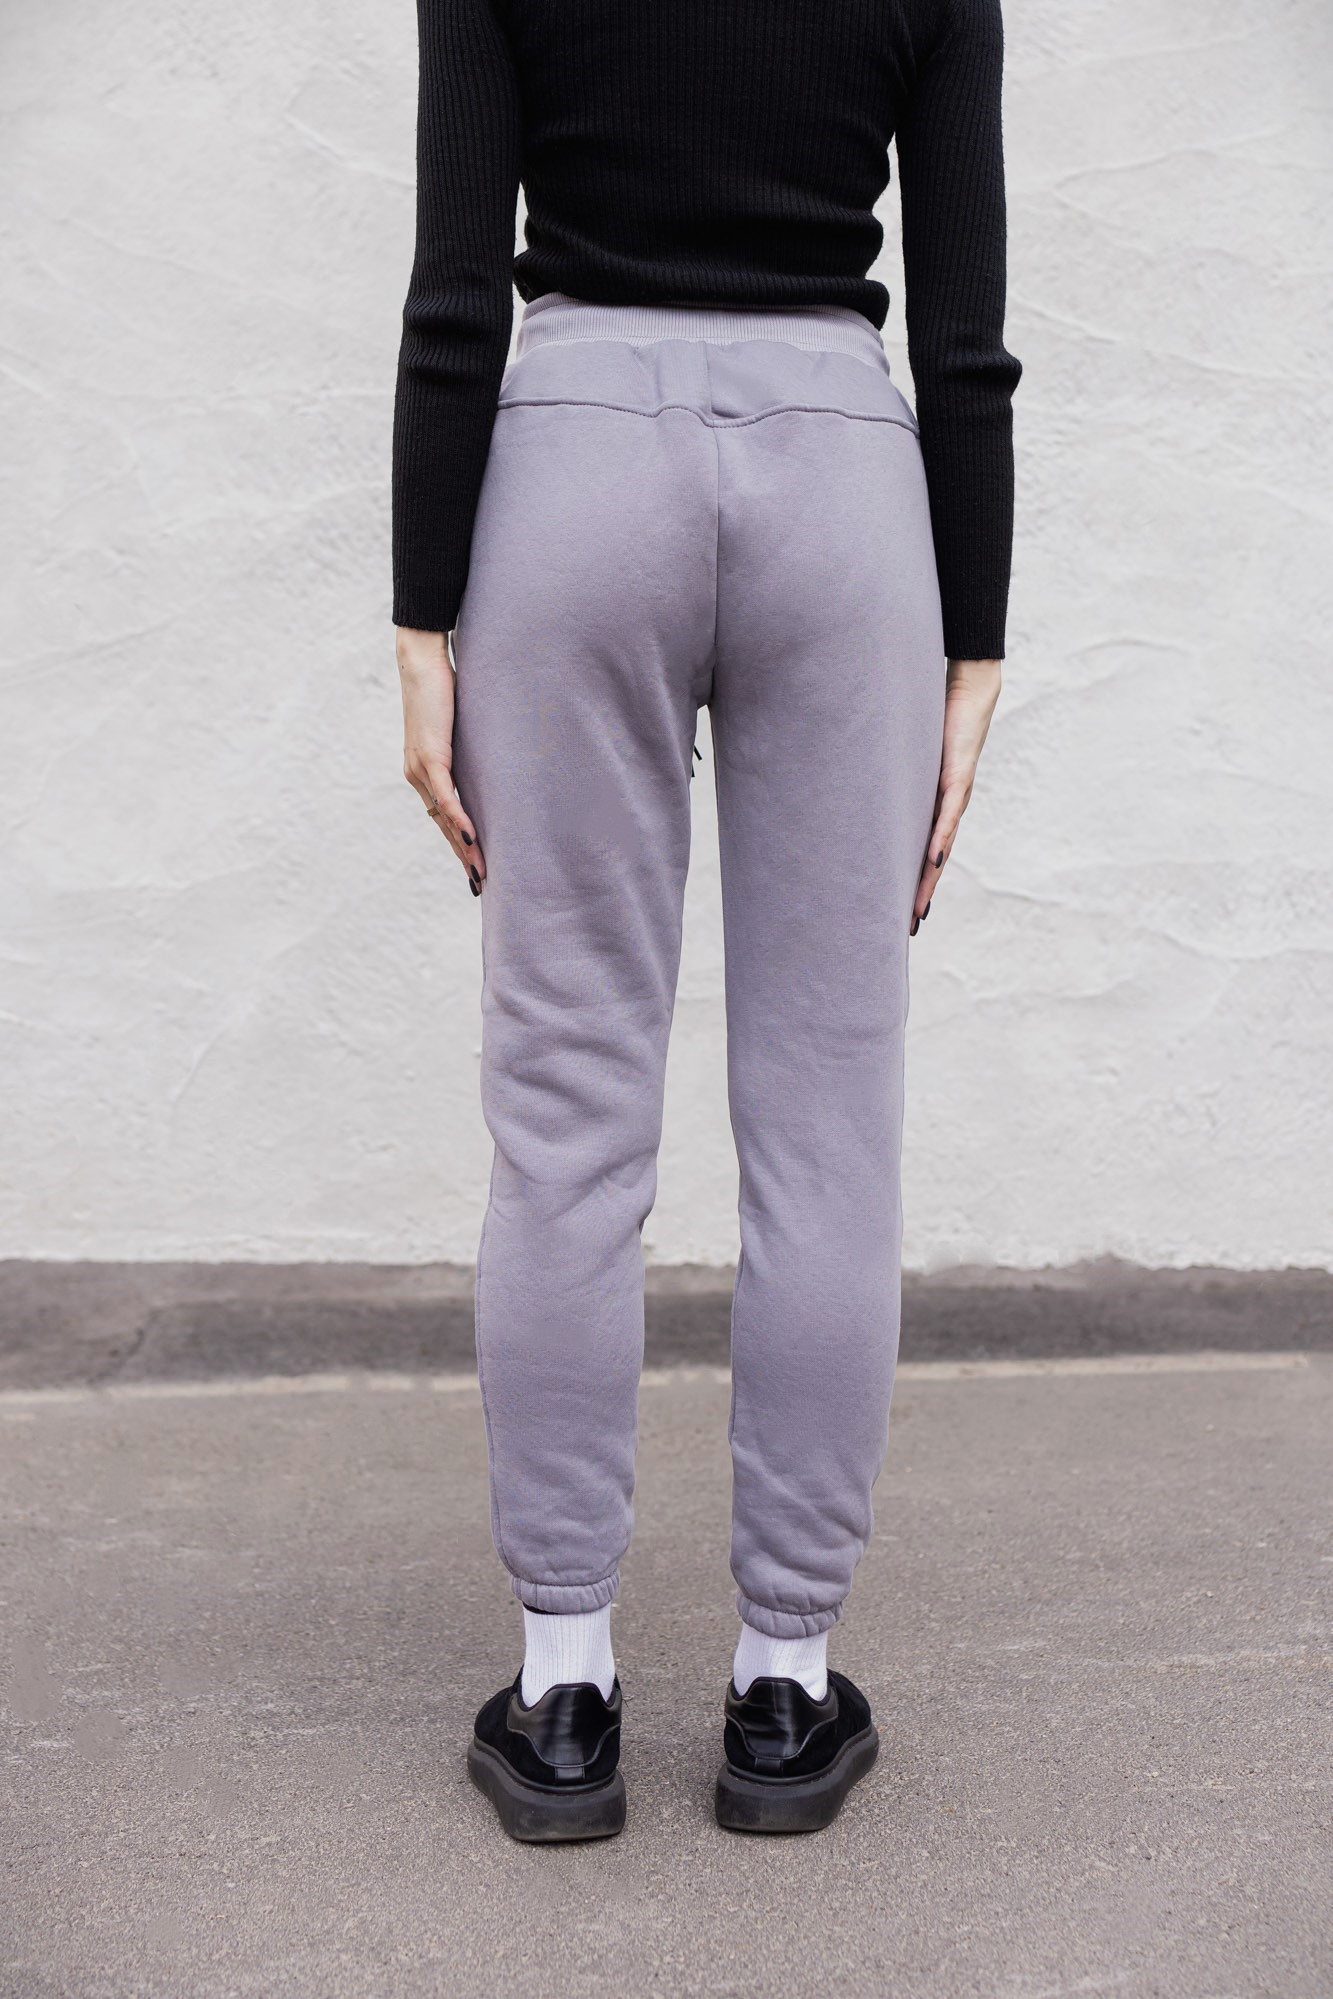 Спортивные штаны Without Basic Gray FLEECE Woman - Фото 2